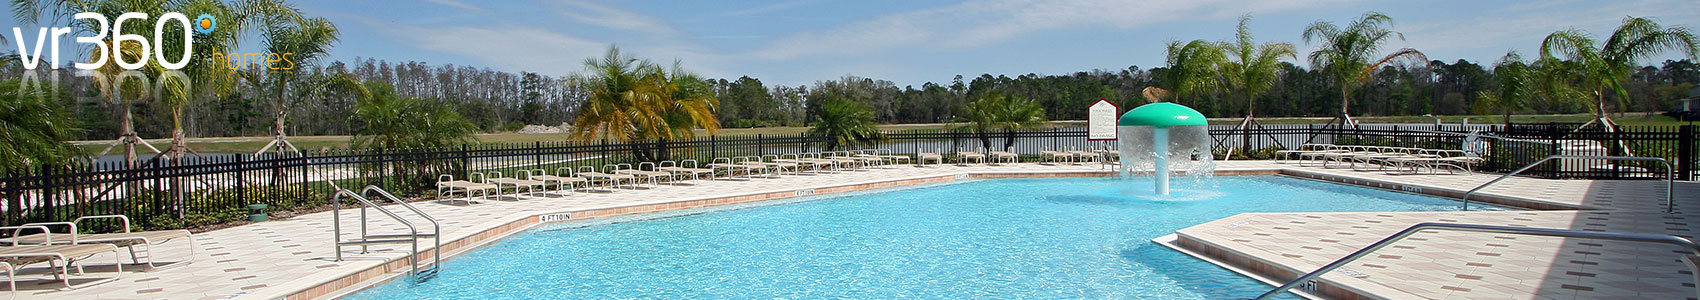 Trafalgar Village Villas and Vacation Rentals in Kissimmee Florida